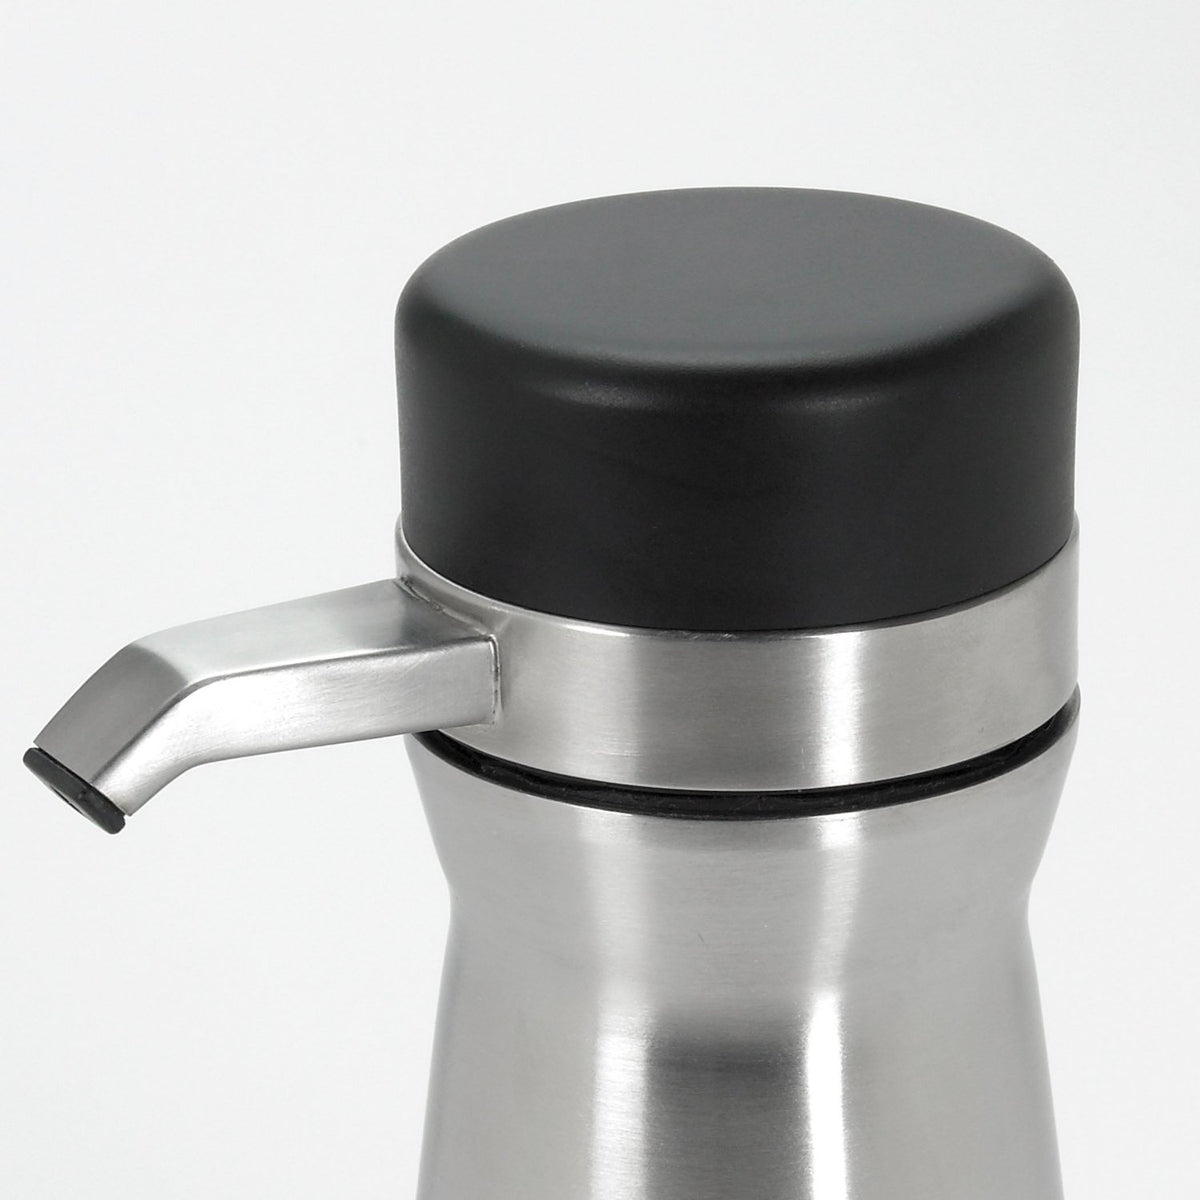 OXO 13171800 Good Grips Soap Dispenser, Stainless Steel, Silver/Black, 14 Oz